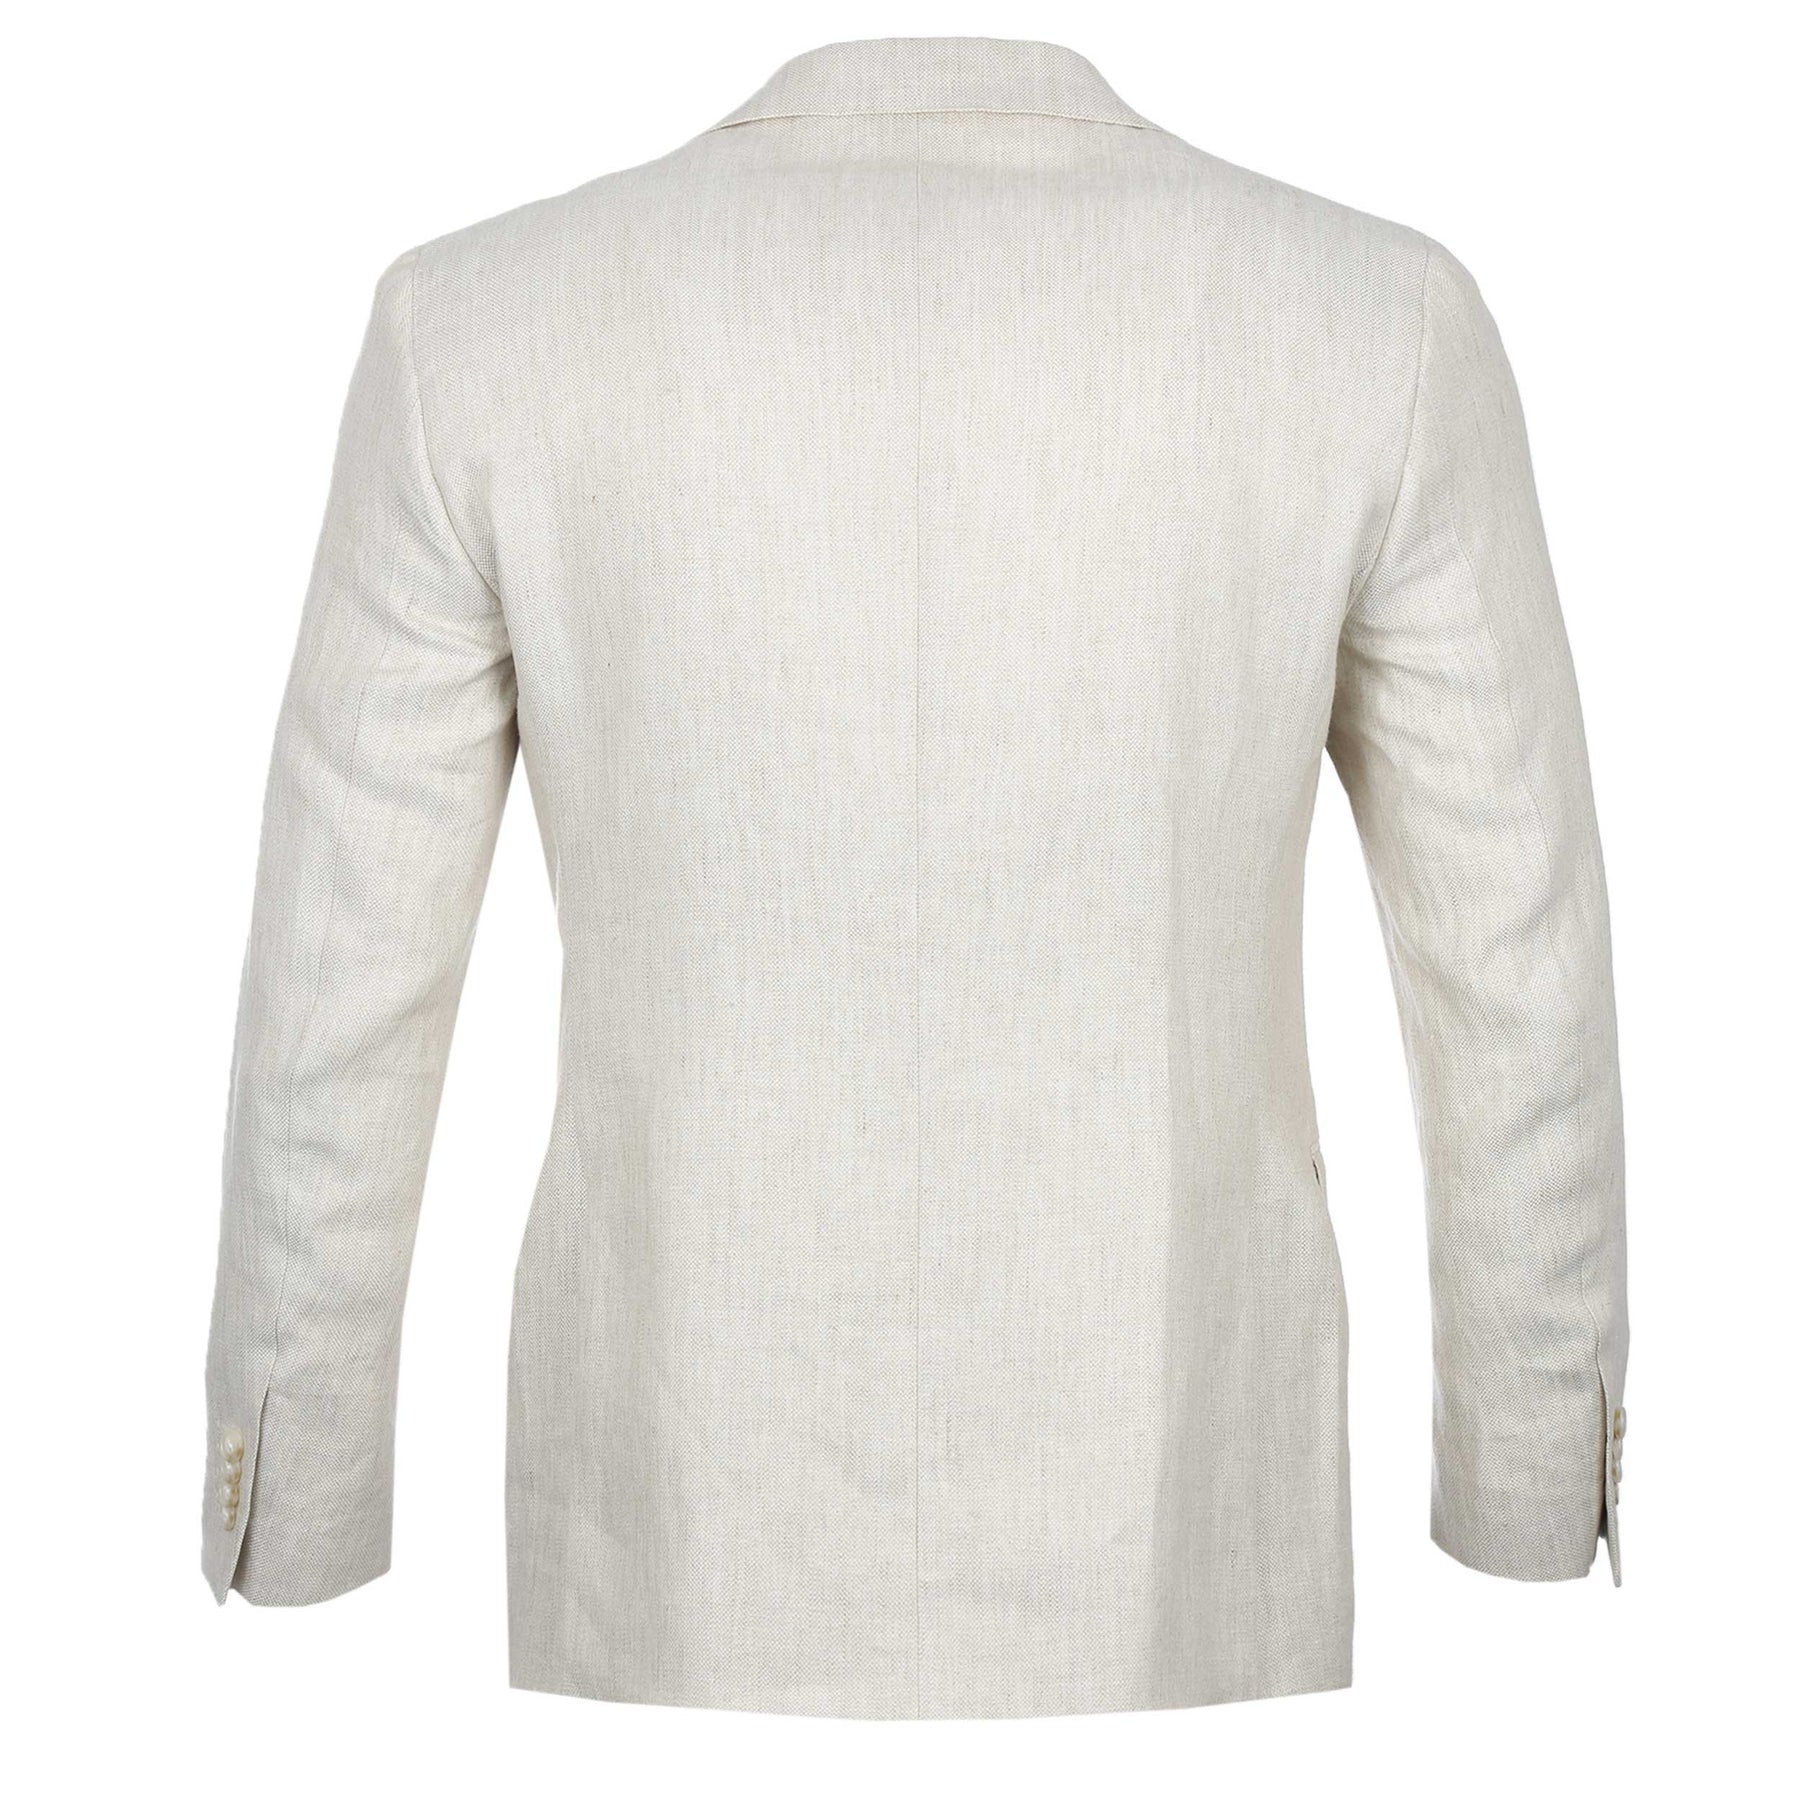 Norton Barrie Bespoke Linen Jacket in Beige | Norton Barrie Bespoke I ...